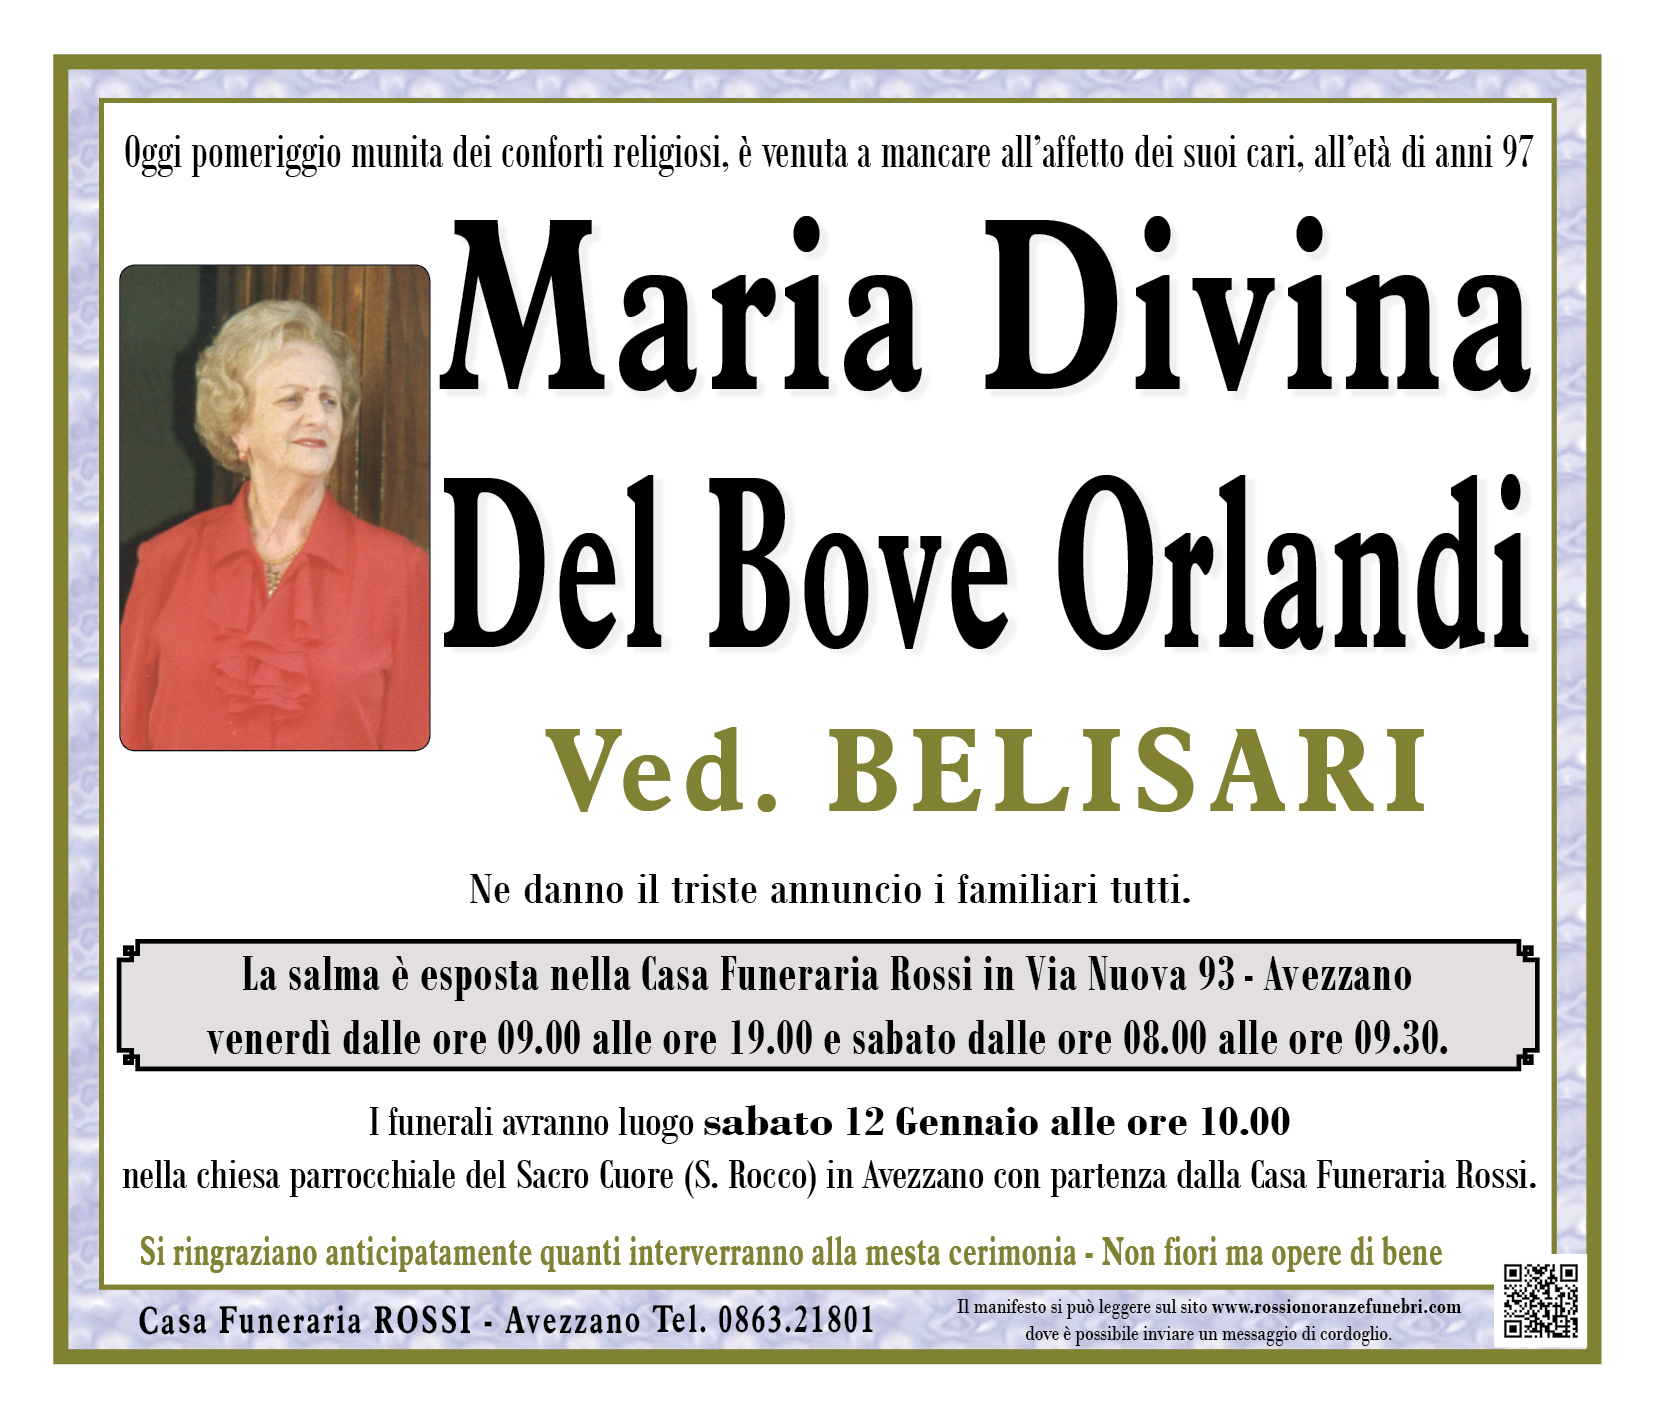 Maria Divina Del Bove Orlandi